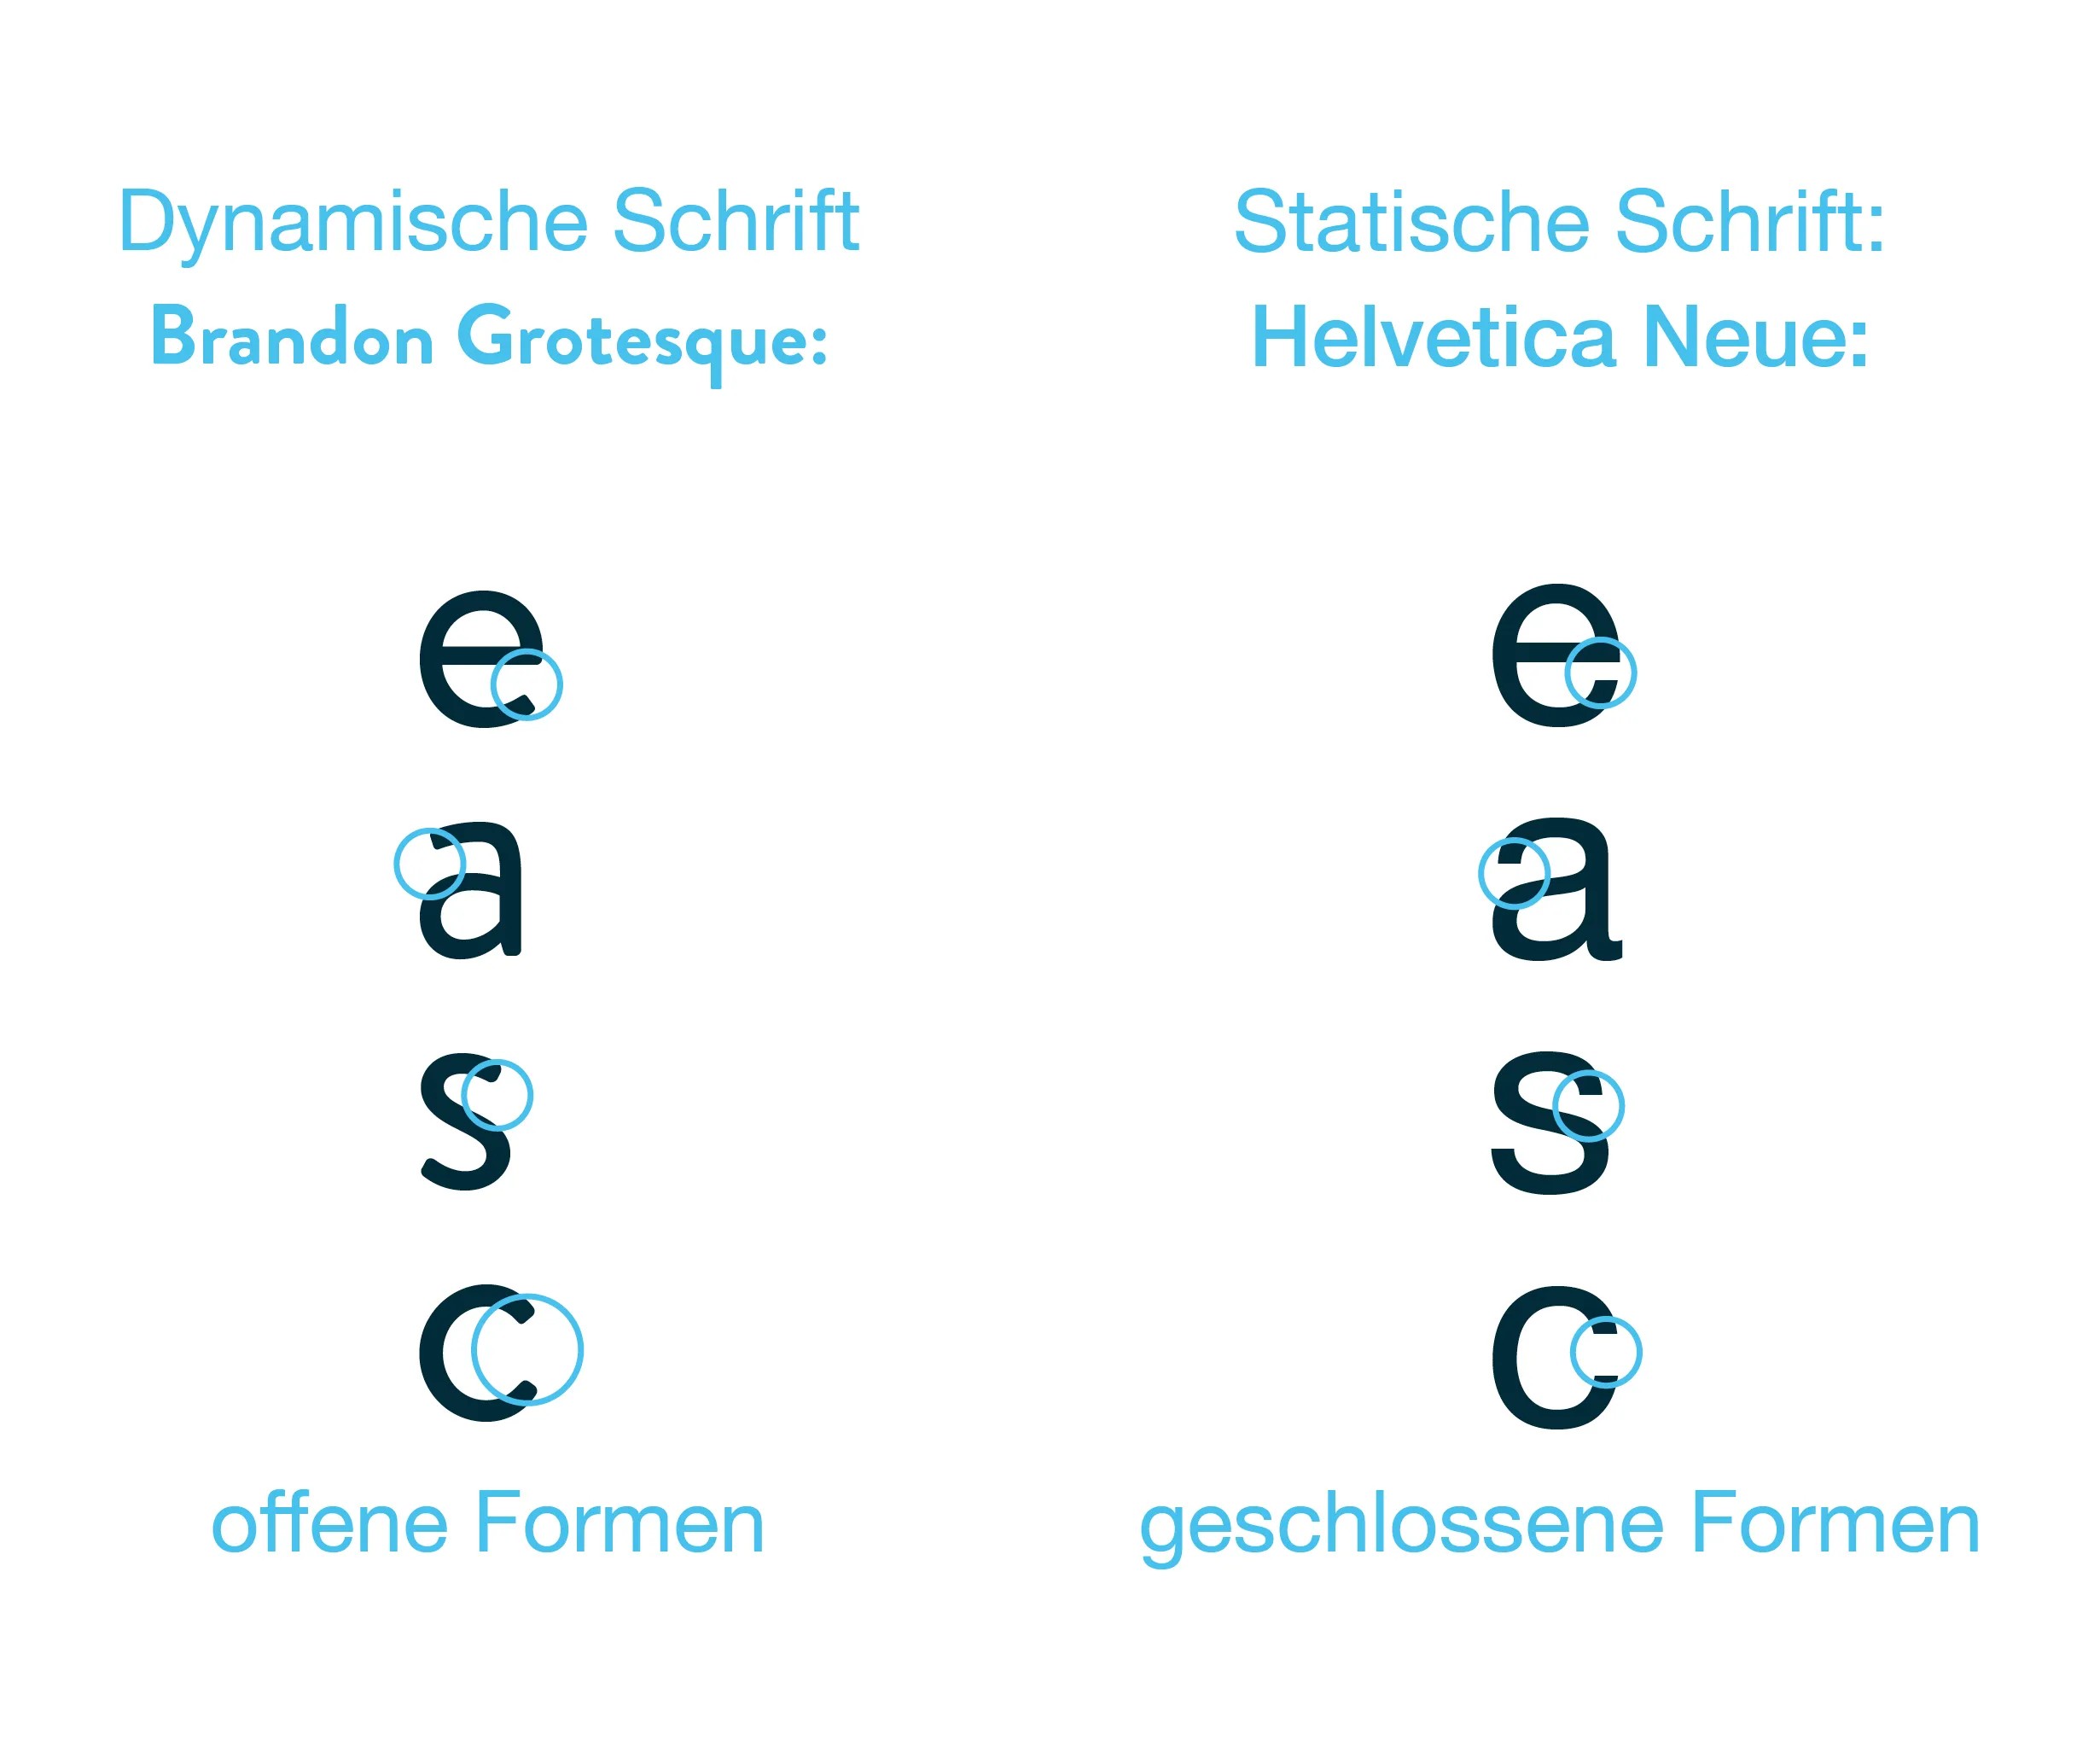 Gegenüberstellung zweier Beispiele für Dynamische (Brandon Grotesque) vs. Statische Schrift (Helvetica) - offene/versus, geschlossene Formen